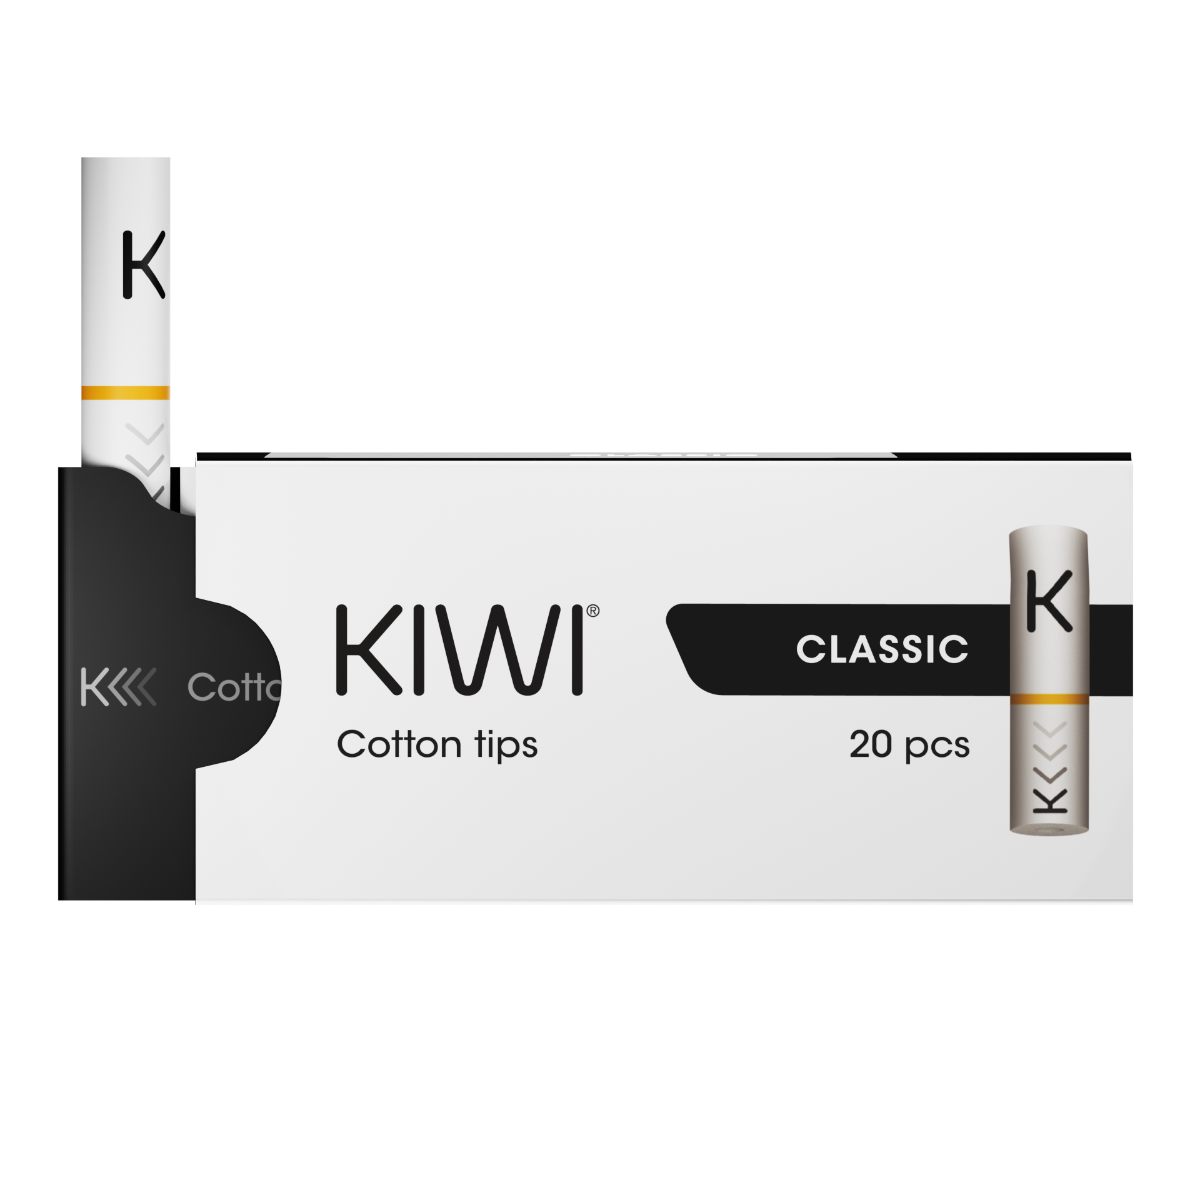 Kiwi Cotton Filters (20pcs)